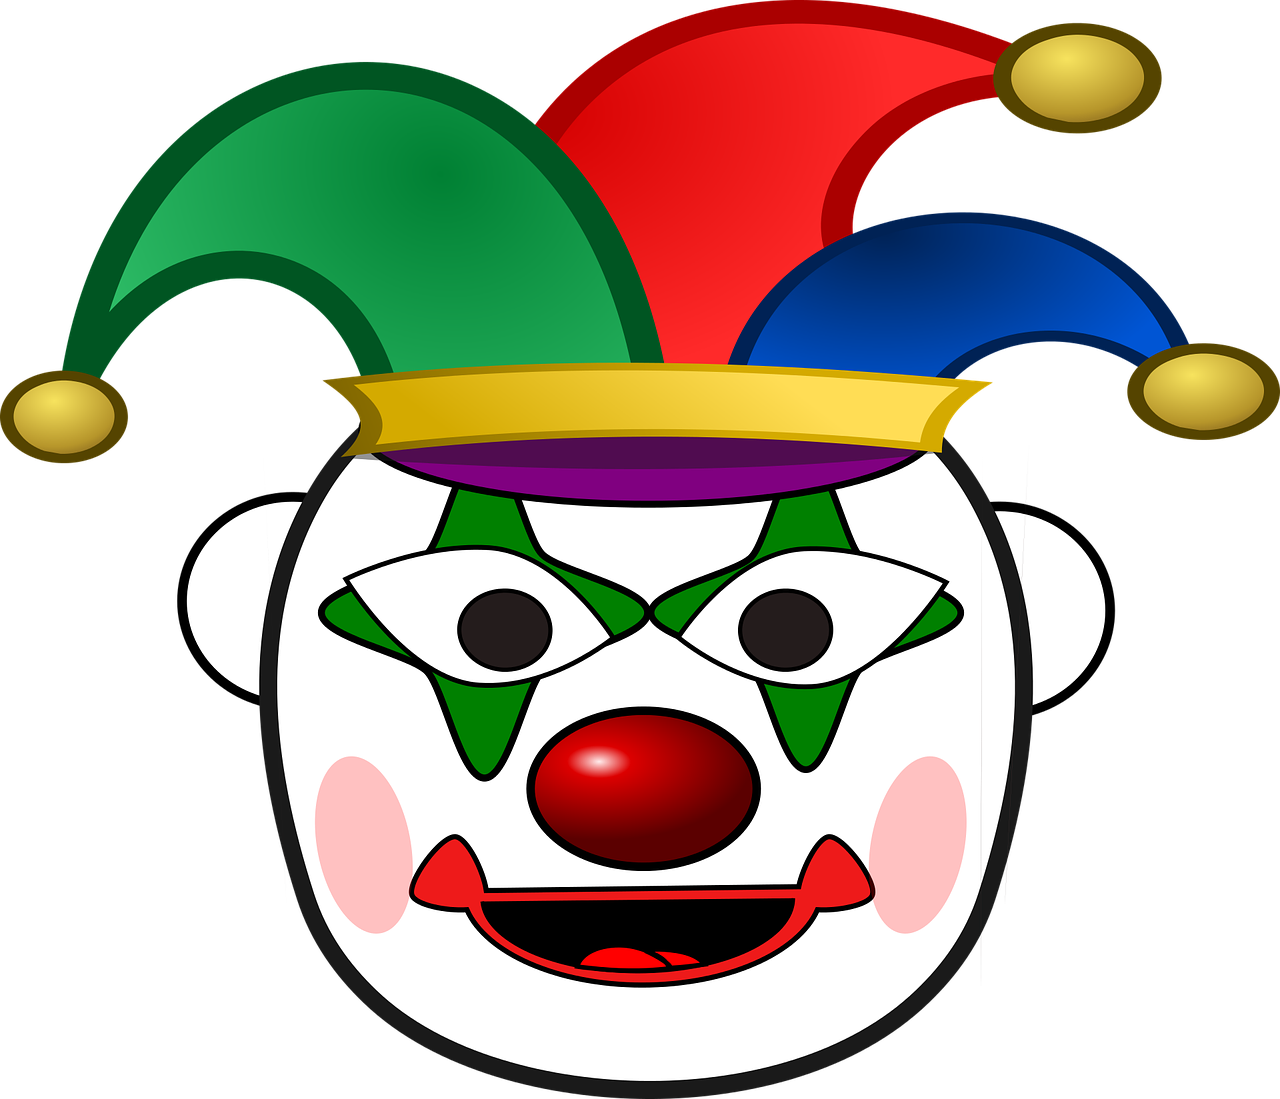 clown-1445034_1280